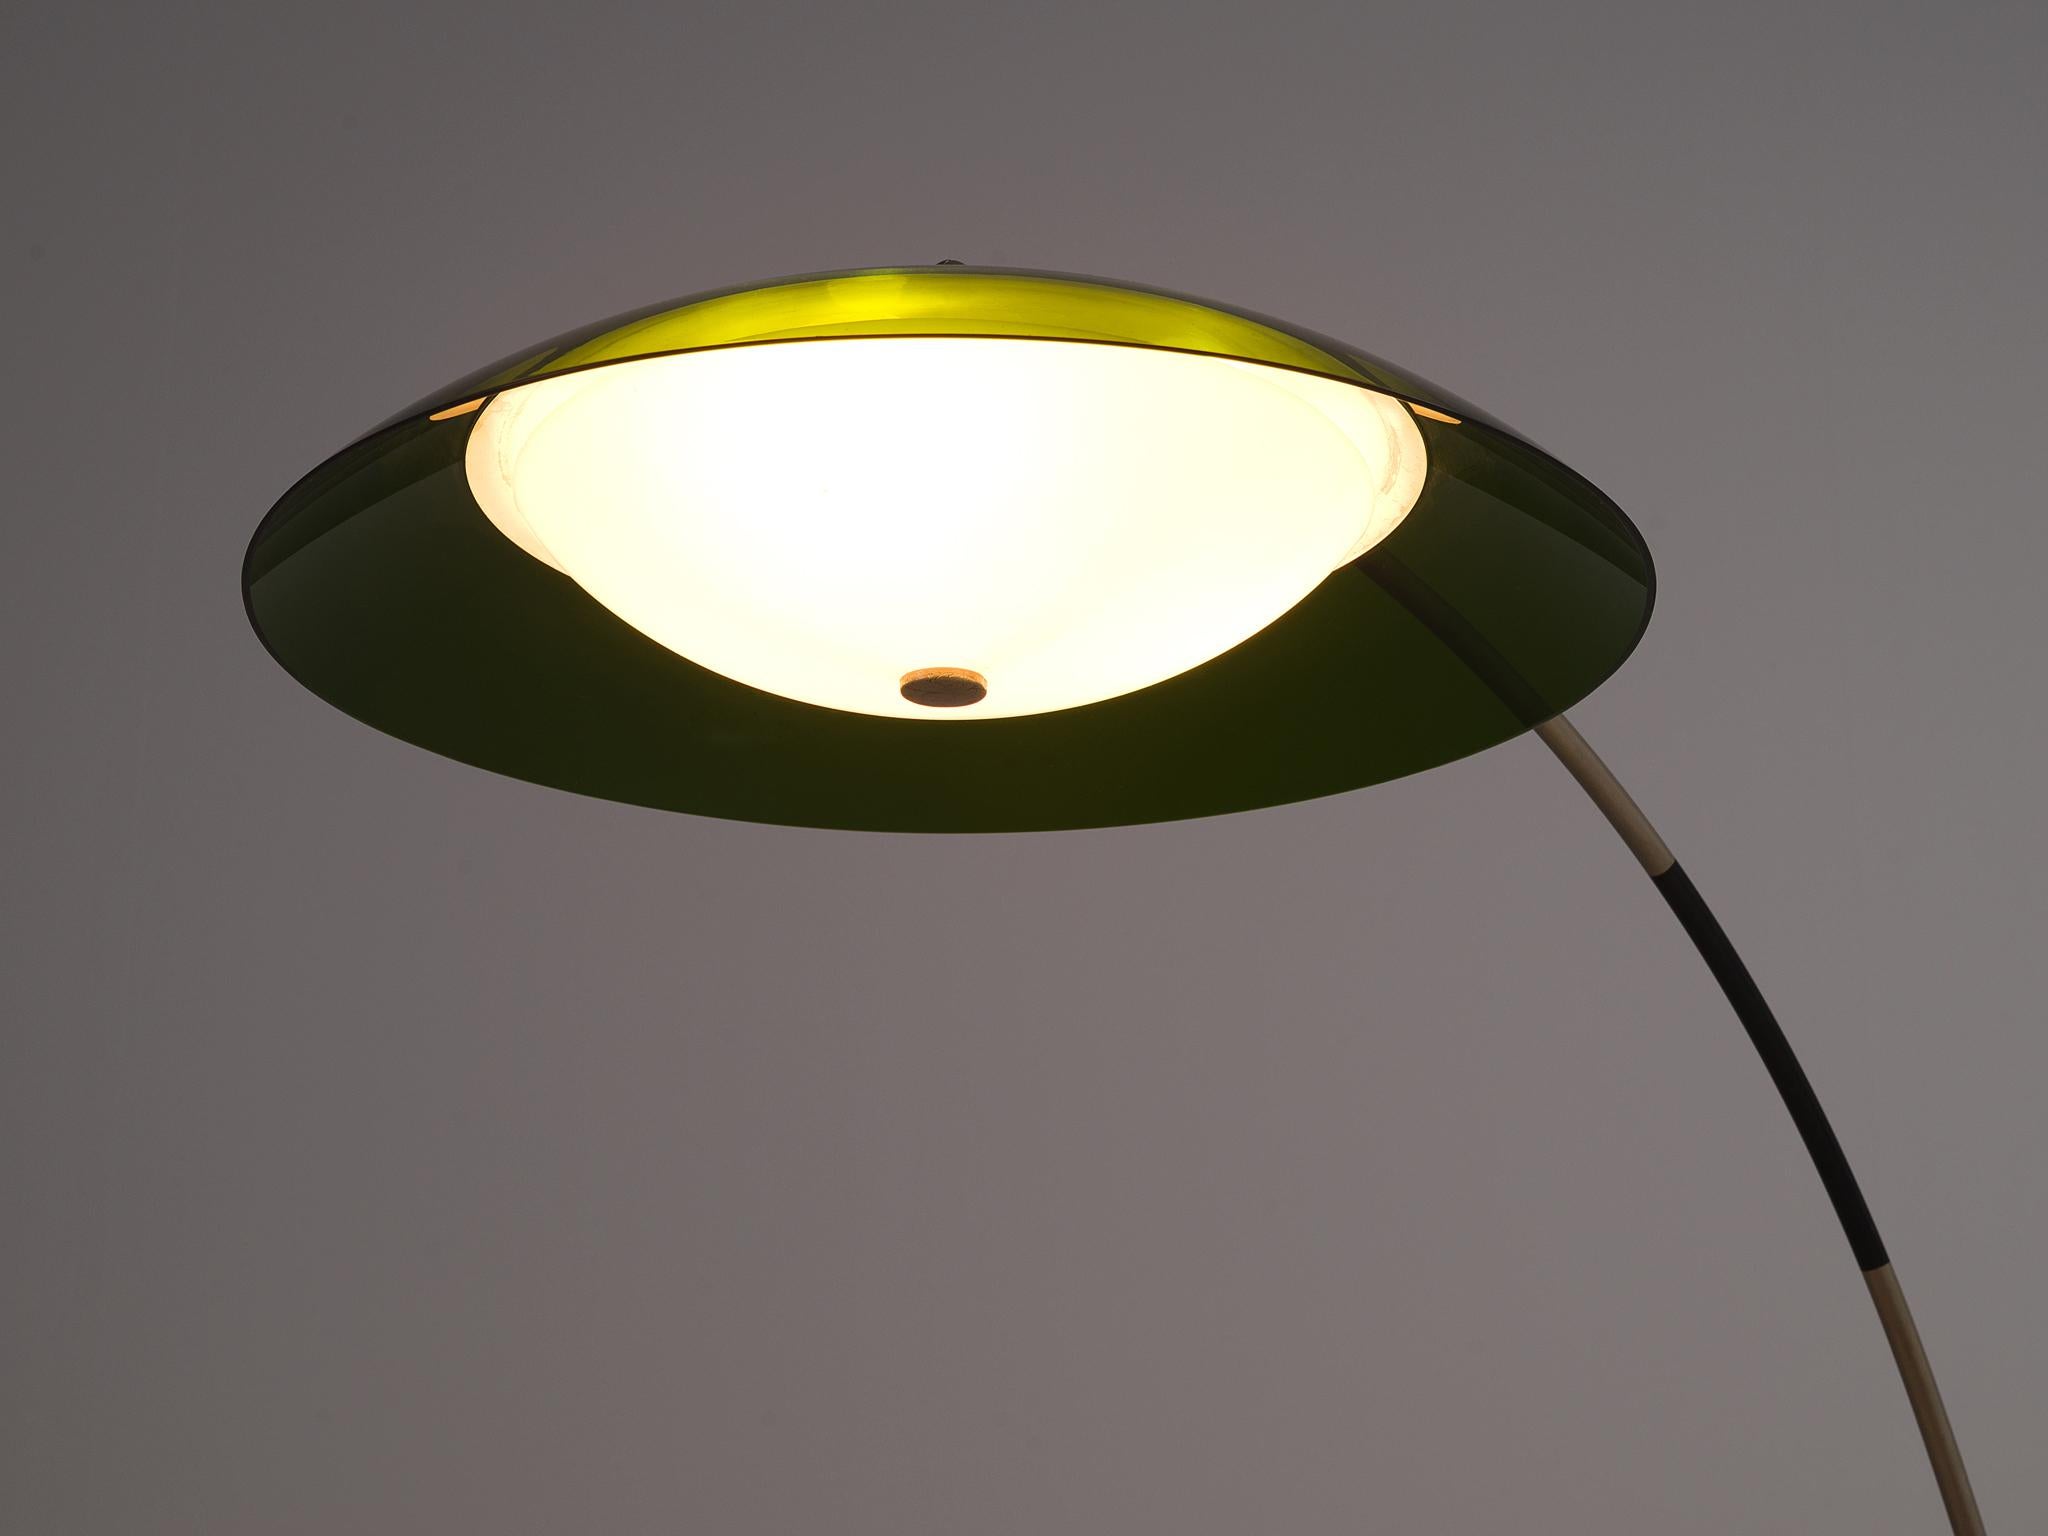 Mid-Century Modern Italian Floor Lamp with Adjustable Stem